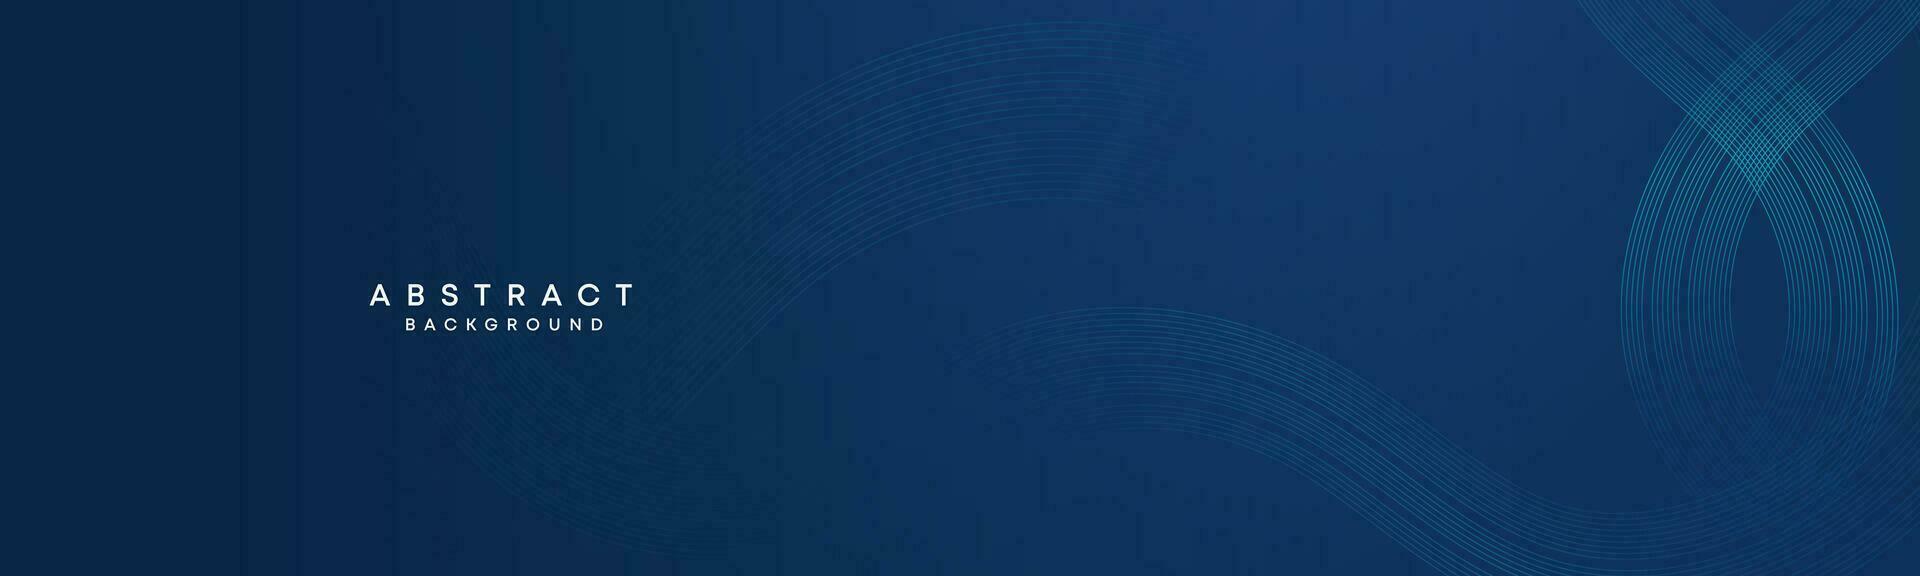 abstrakt dunkel Blau winken Kreise Linien Technologie Hintergrund. modern Gradient mit glühend Linien glänzend geometrisch gestalten und Diagonale, zum Broschüre, Abdeckung, Poster, Banner, Webseite, Header vektor